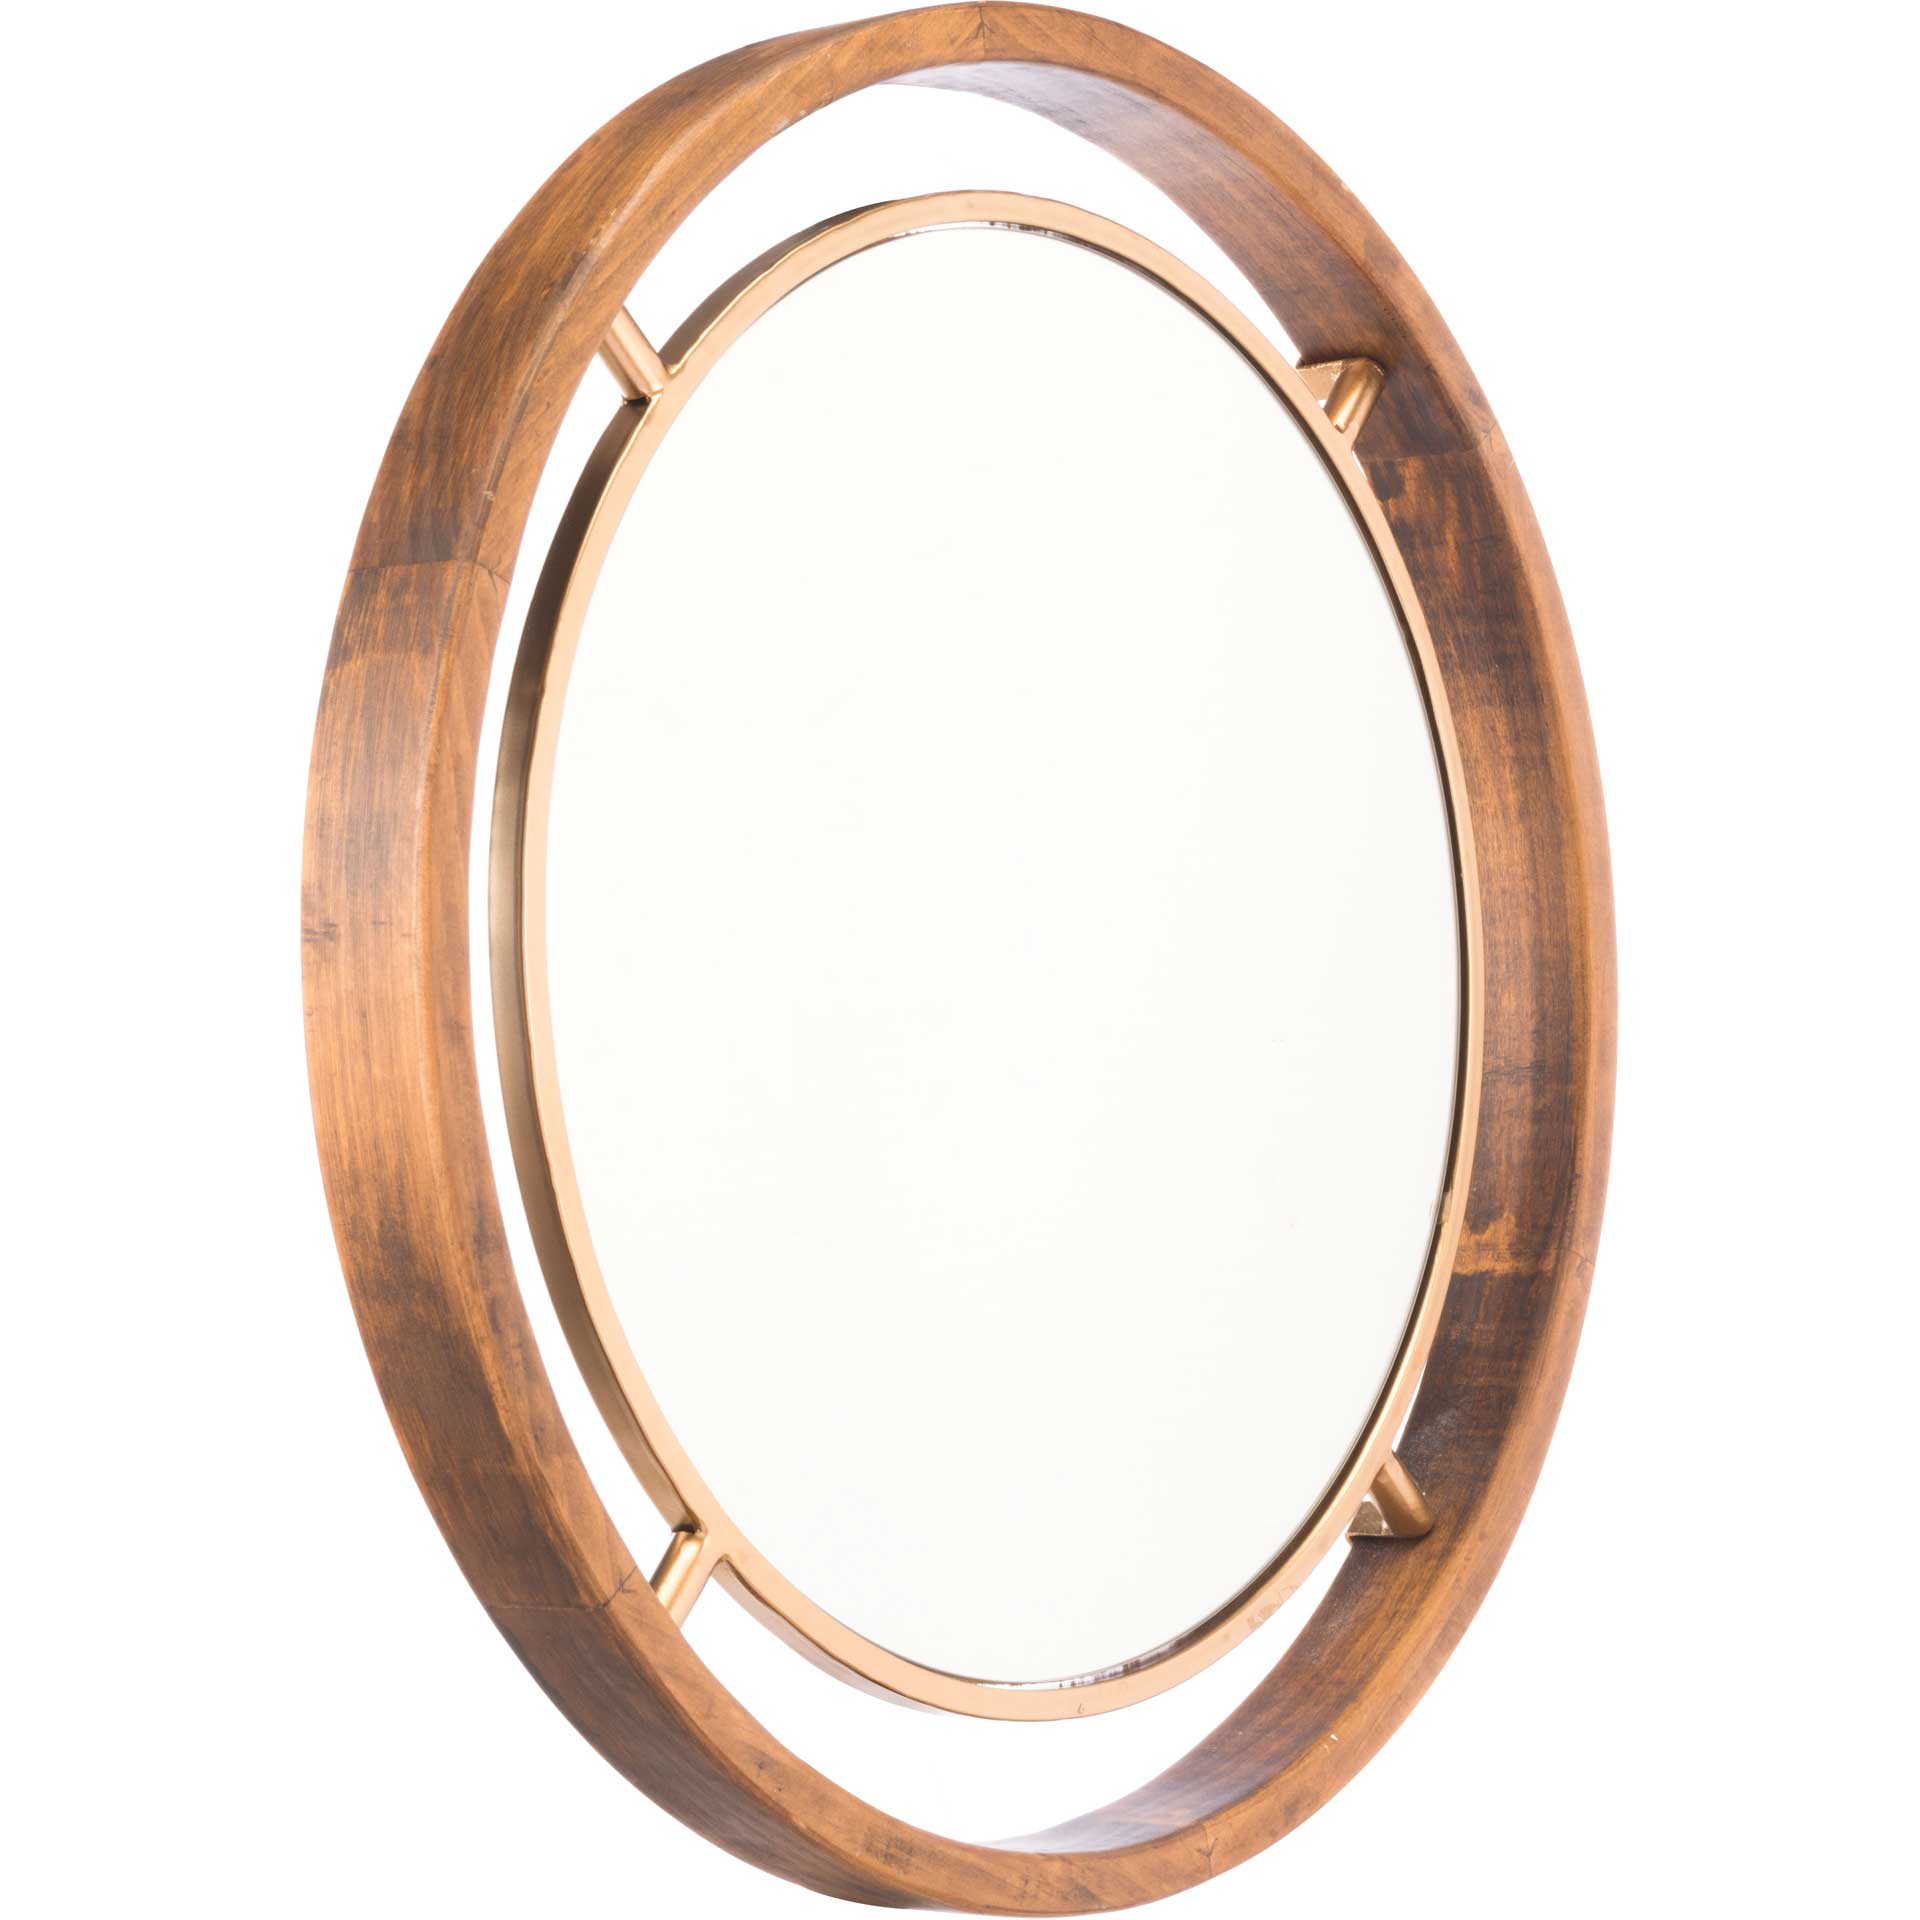 Central Round Wood Mirror Gold